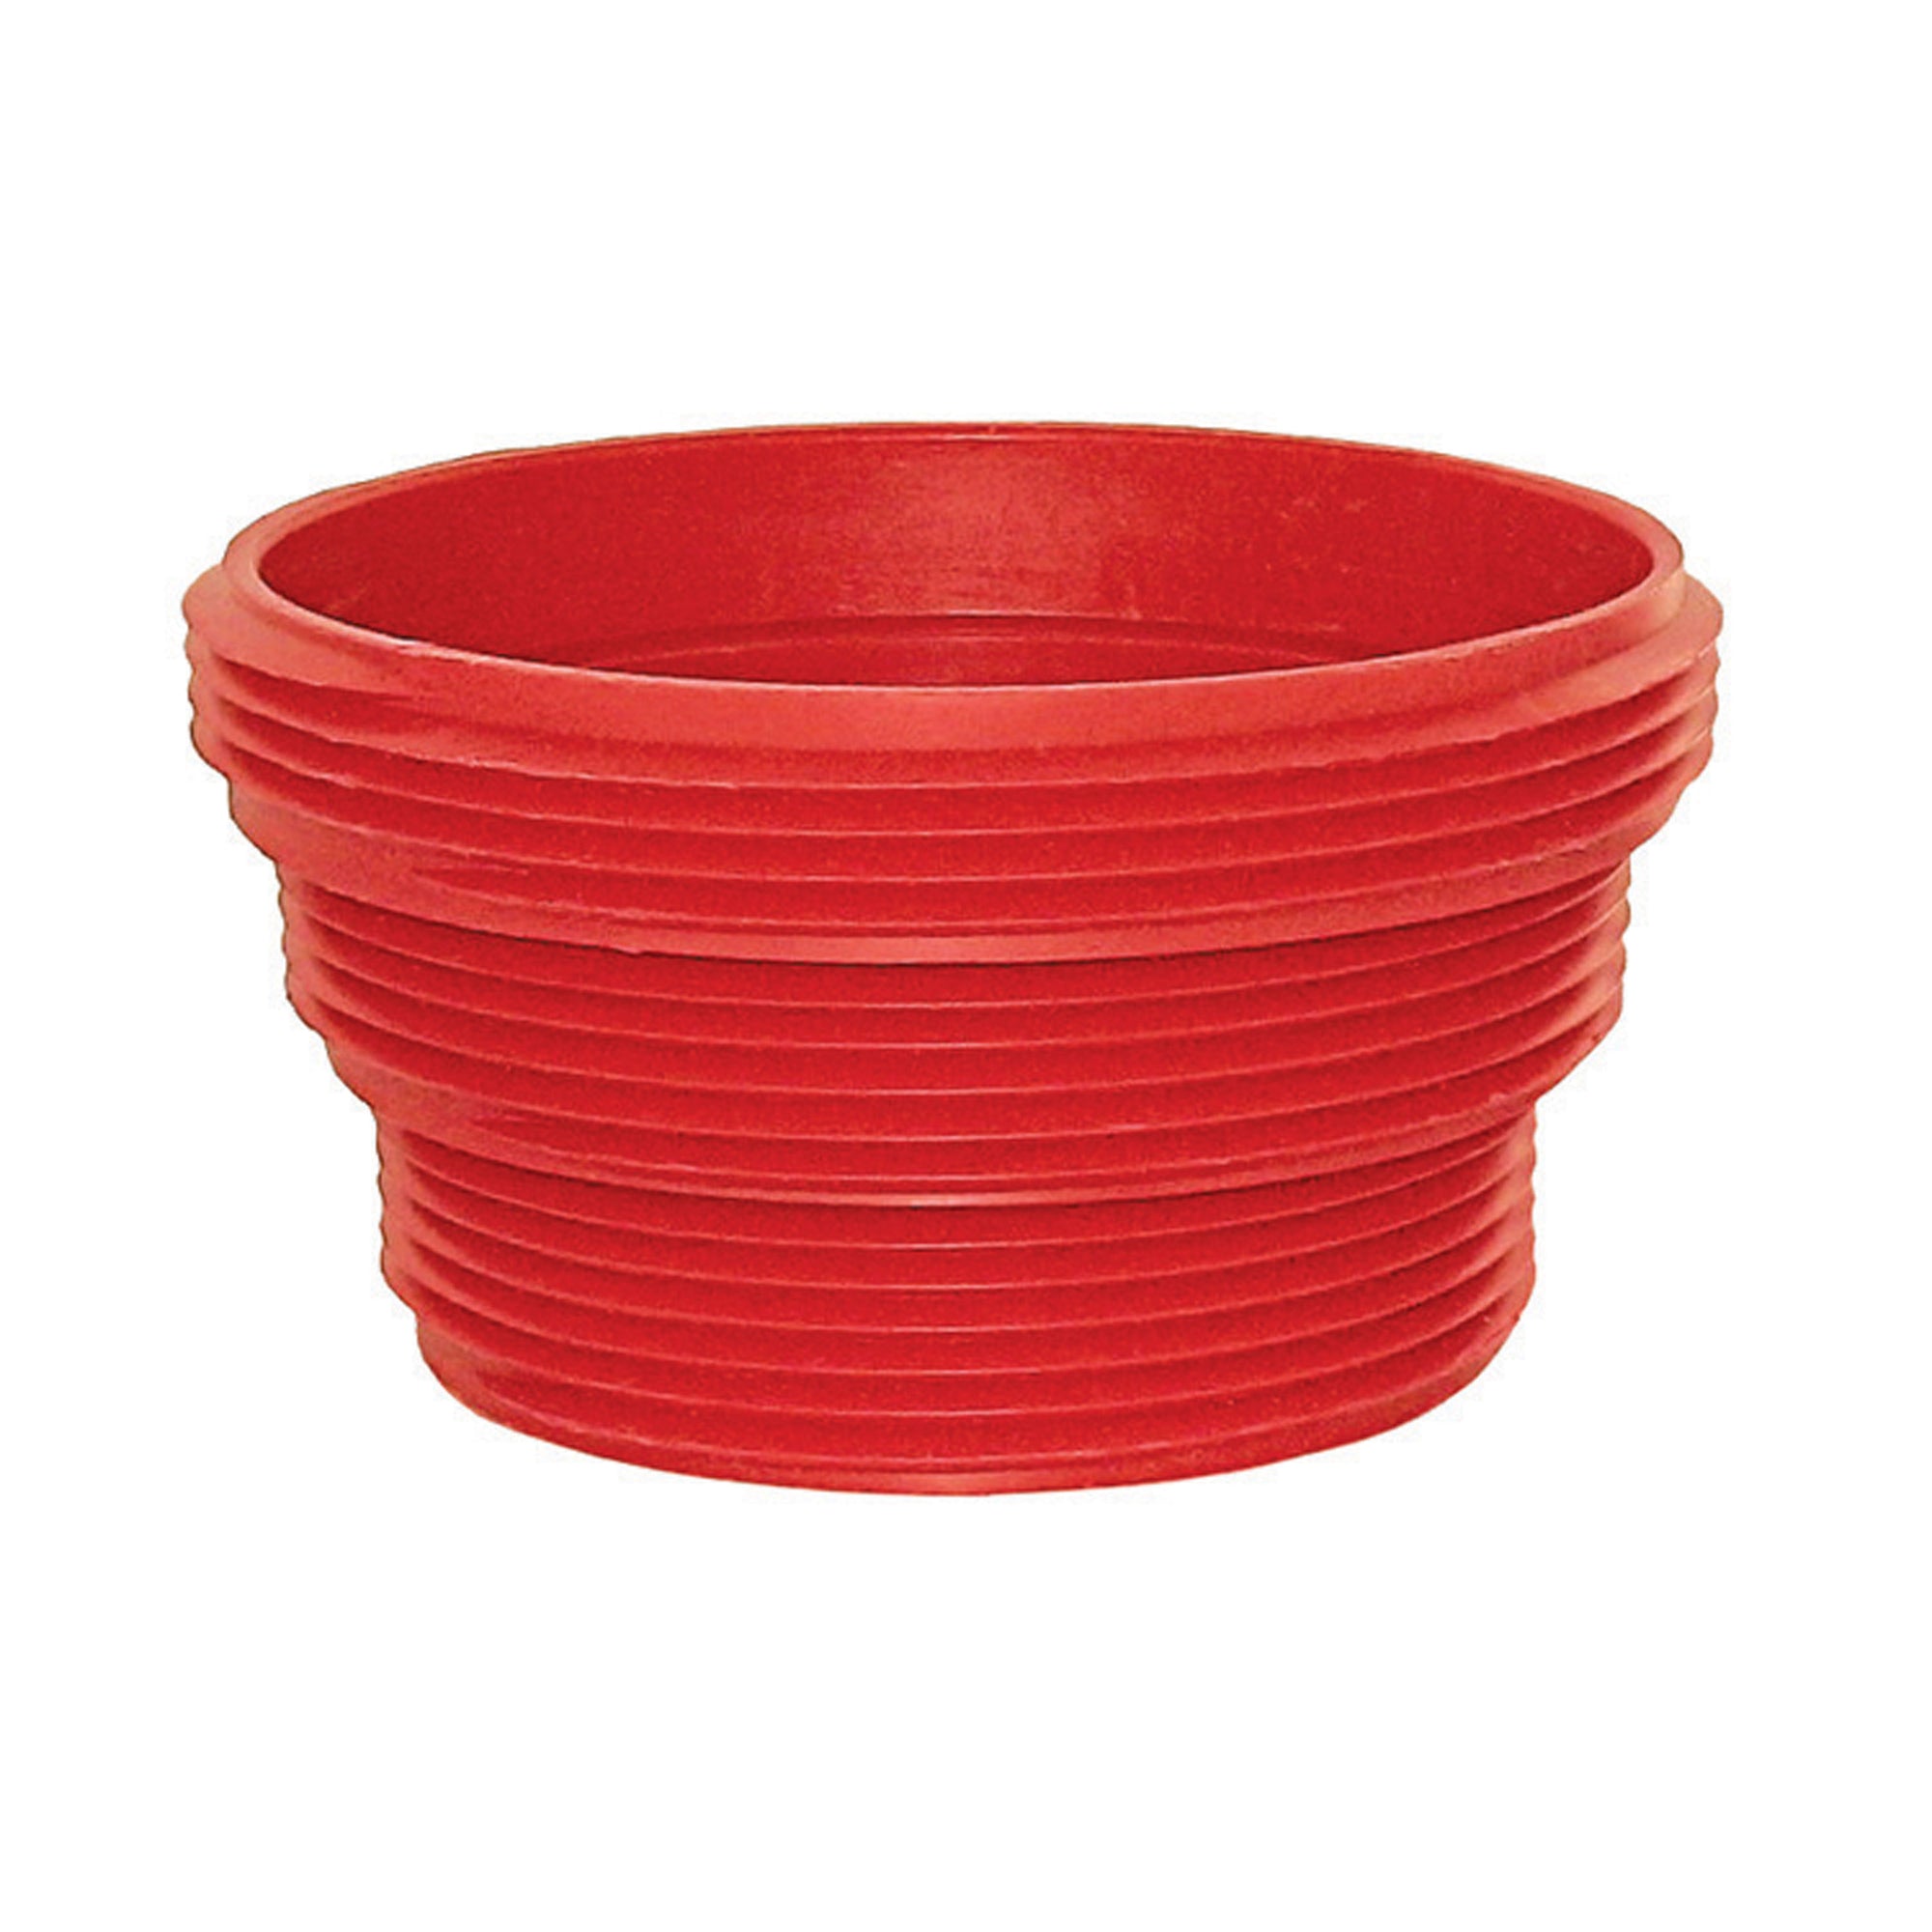 Valterra F02-3105 EZ Coupler - Sewer Thread Attachment, Red